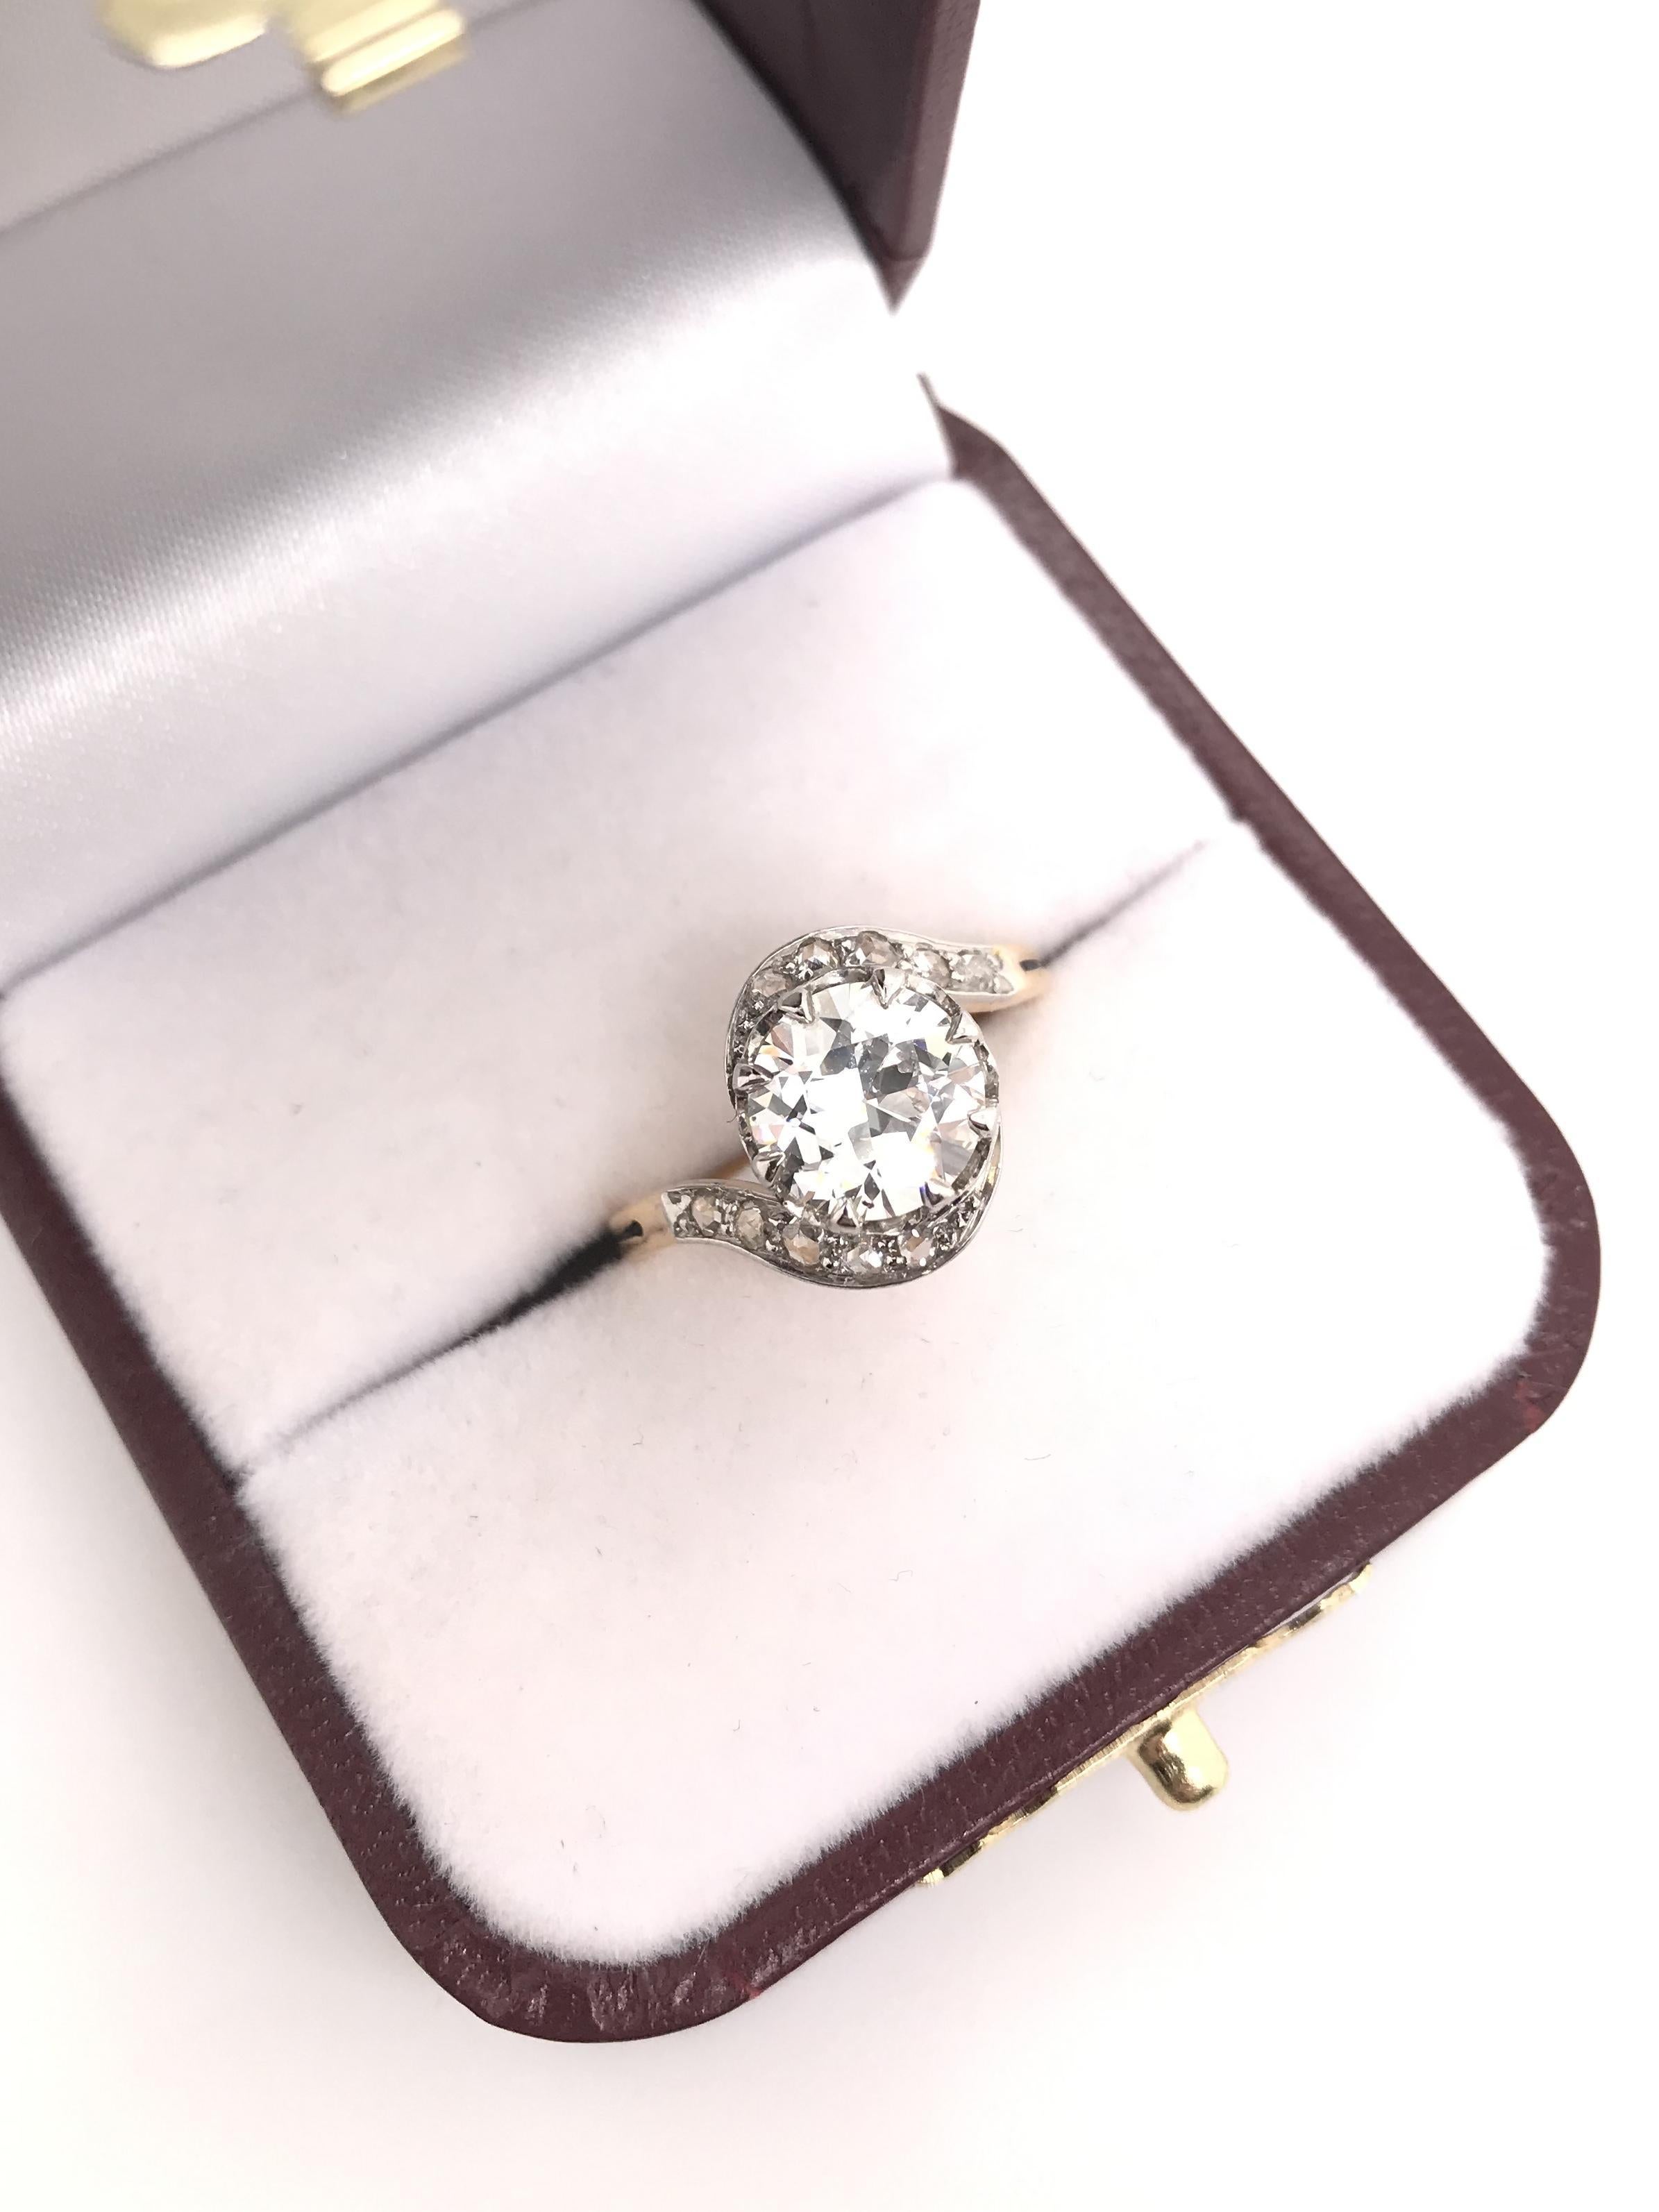 Antique Art Nouveau 1.66 Carat Diamond Ring For Sale 5